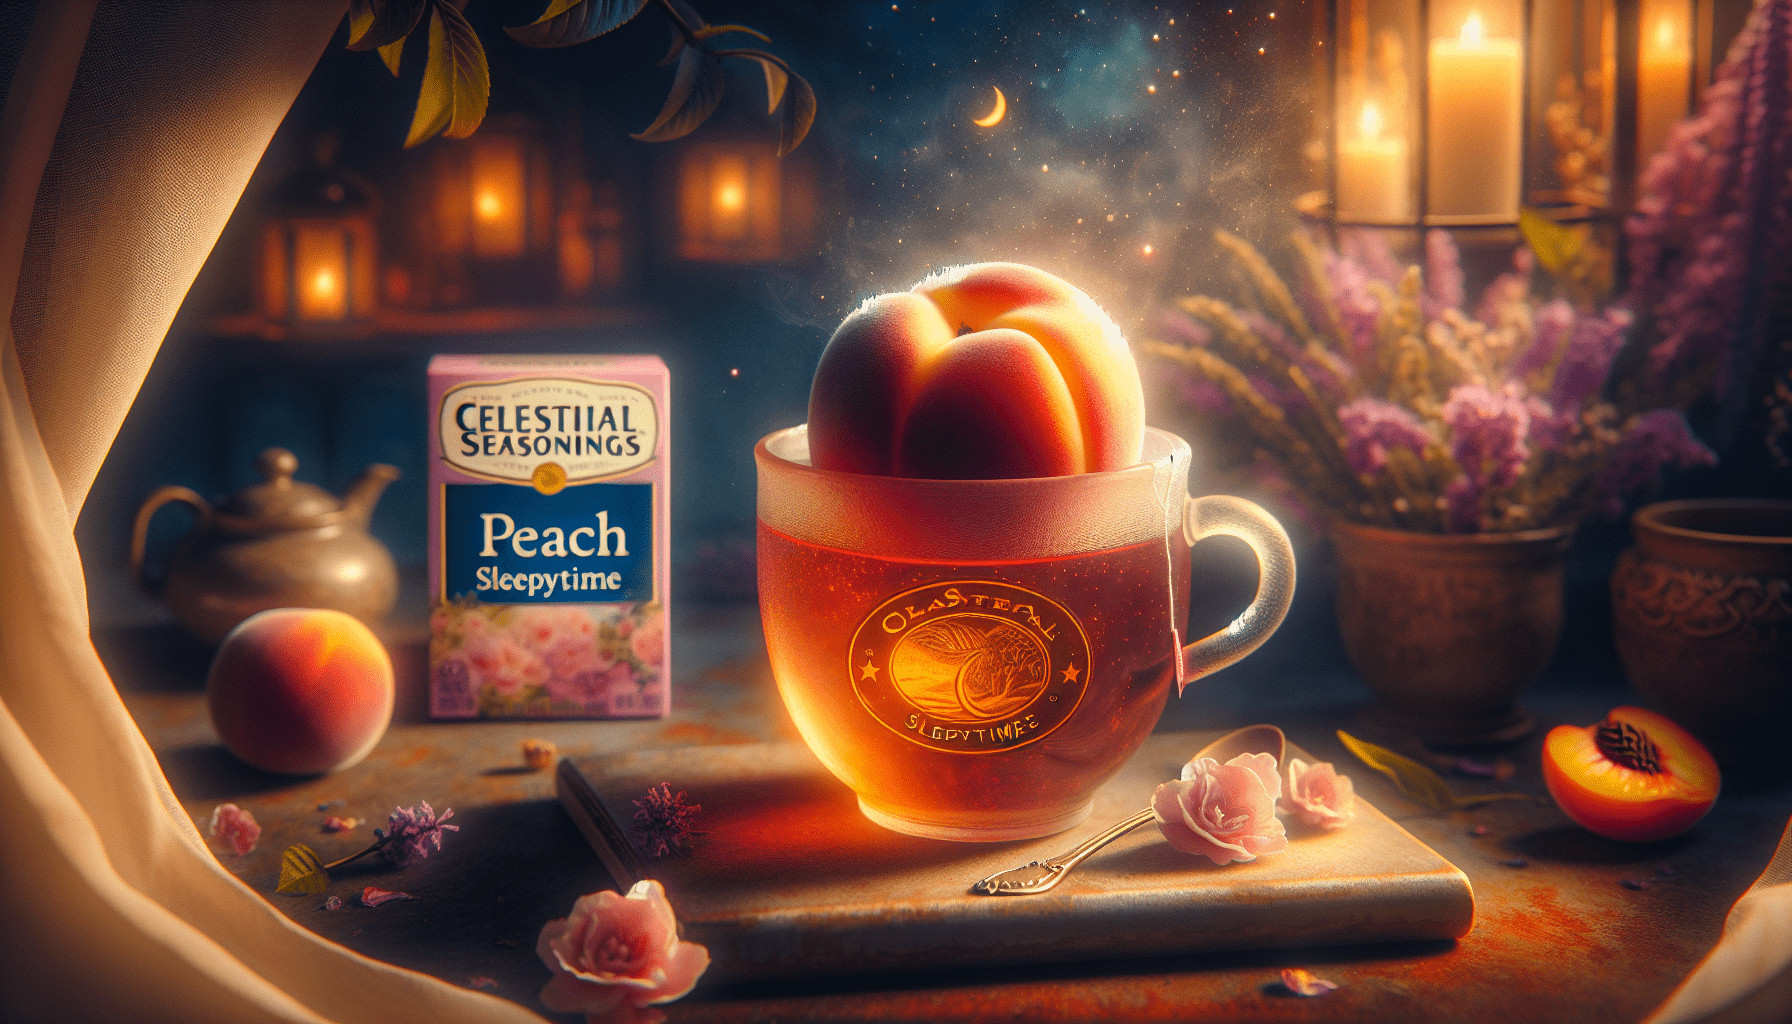 Celestial Seasonings Tea Peach Sleepytime Review